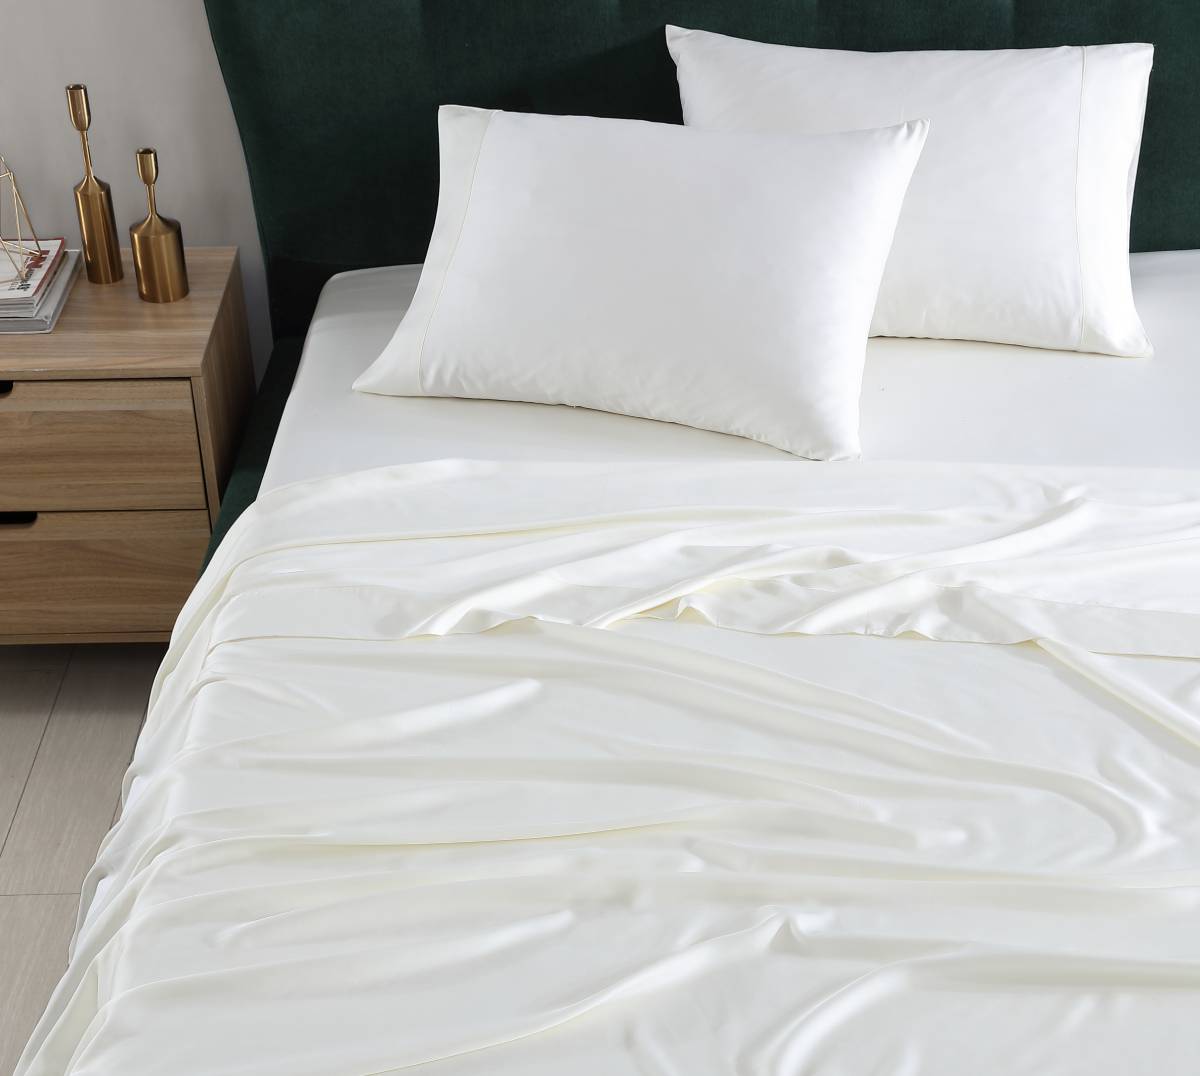 Bamboo Fabric, Viscose From Bamboo. Bamboo sheets on bed. Bamboo pillowcases. Bamboo sheet set.